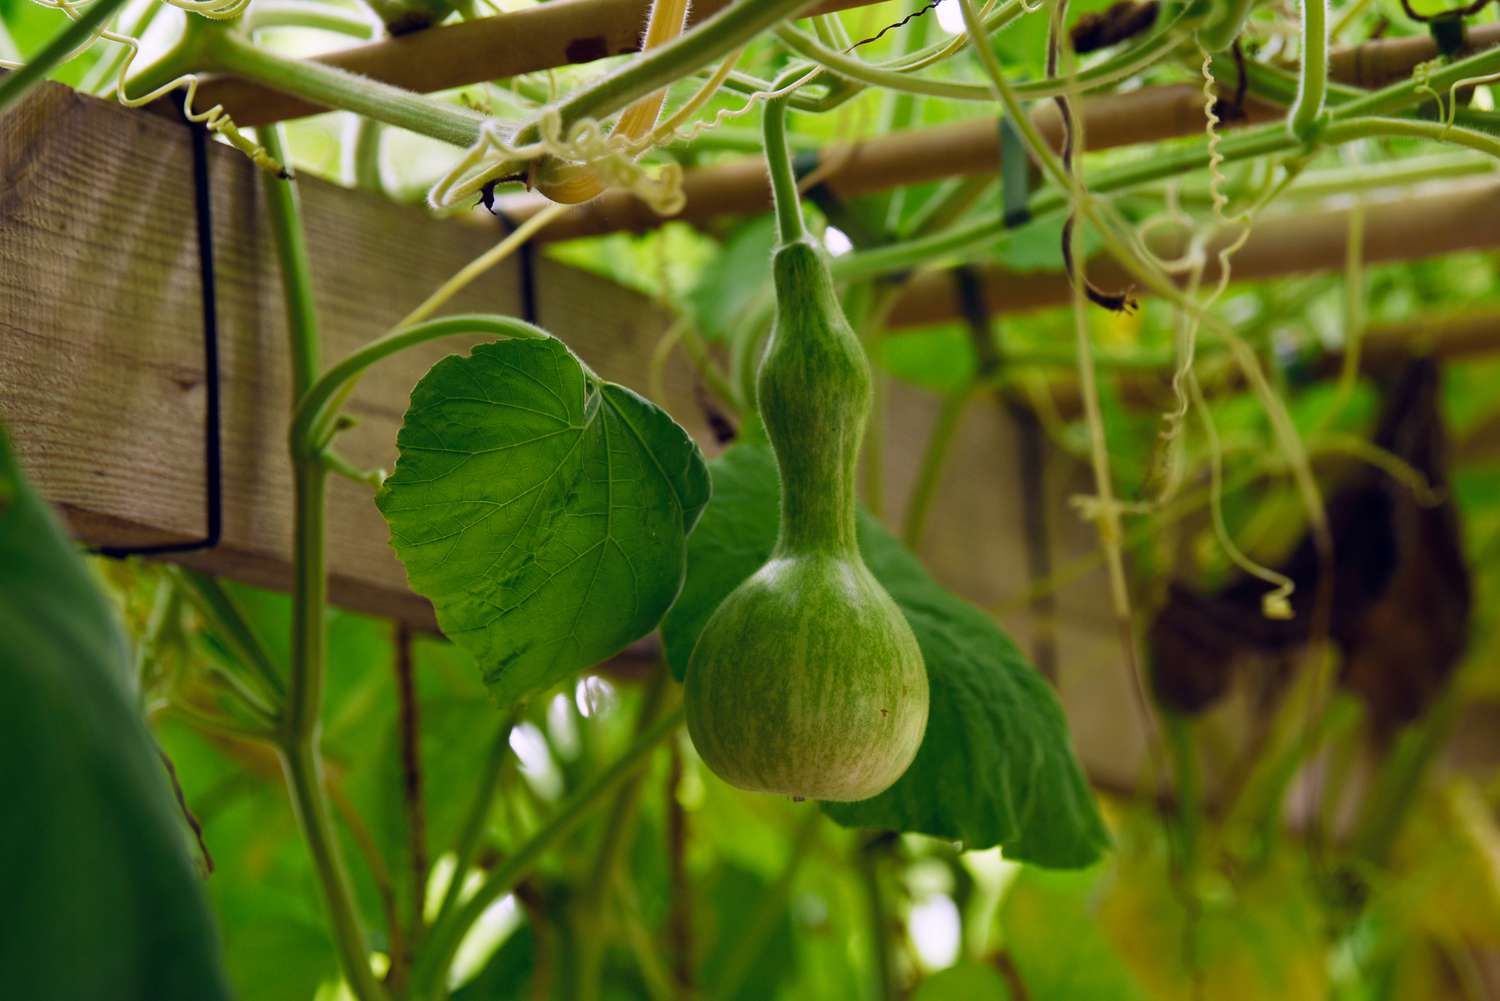 Zierkürbisrebe mit grünem Gemüse, das an einer Holzlaube hängt, Nahaufnahme